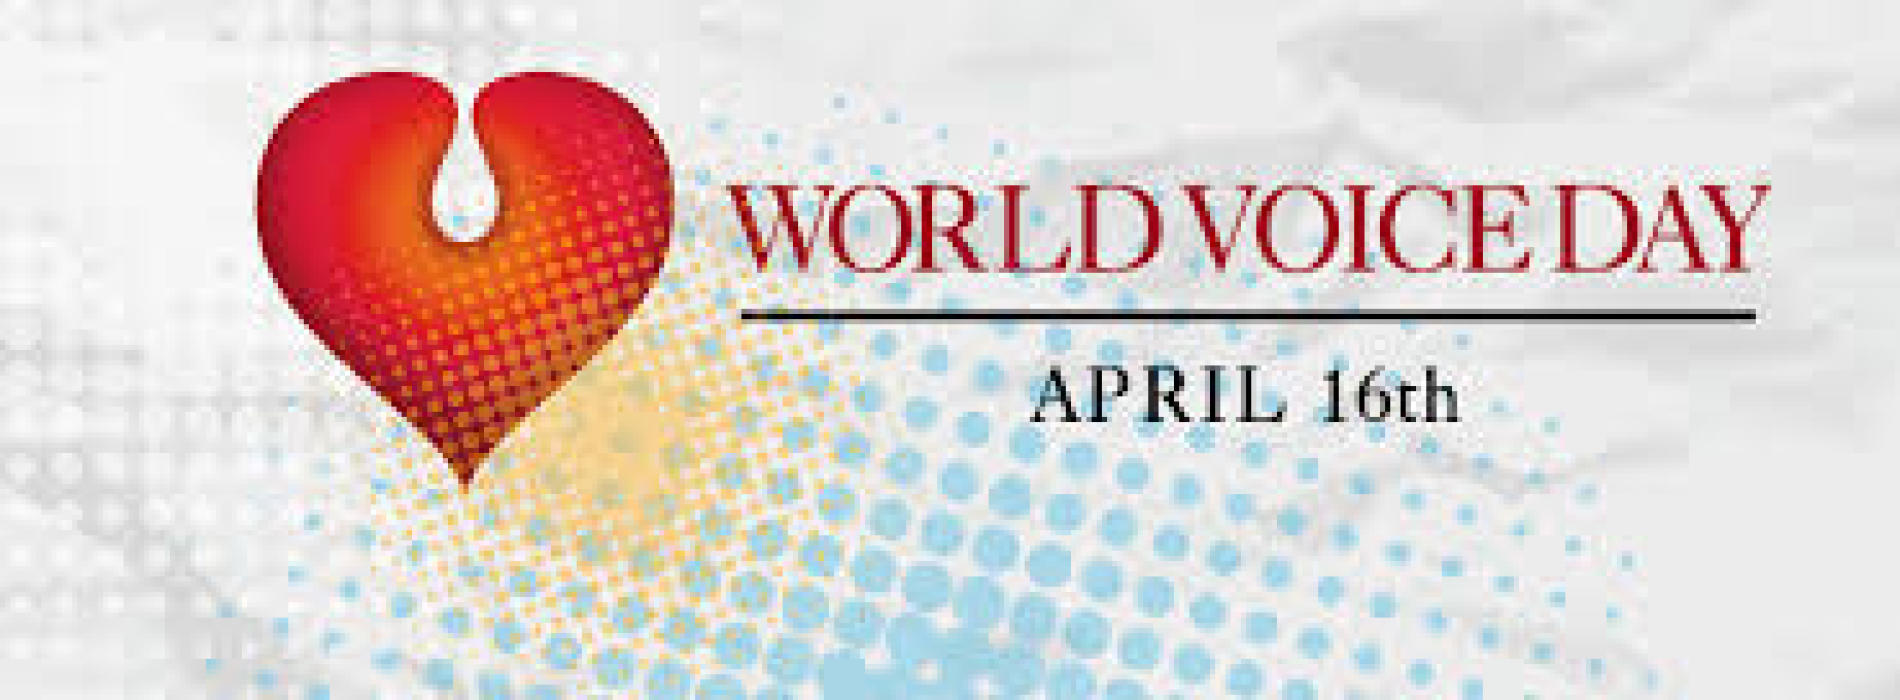 World Voice Day a Caserta, in ospedale visite otorino gratuite